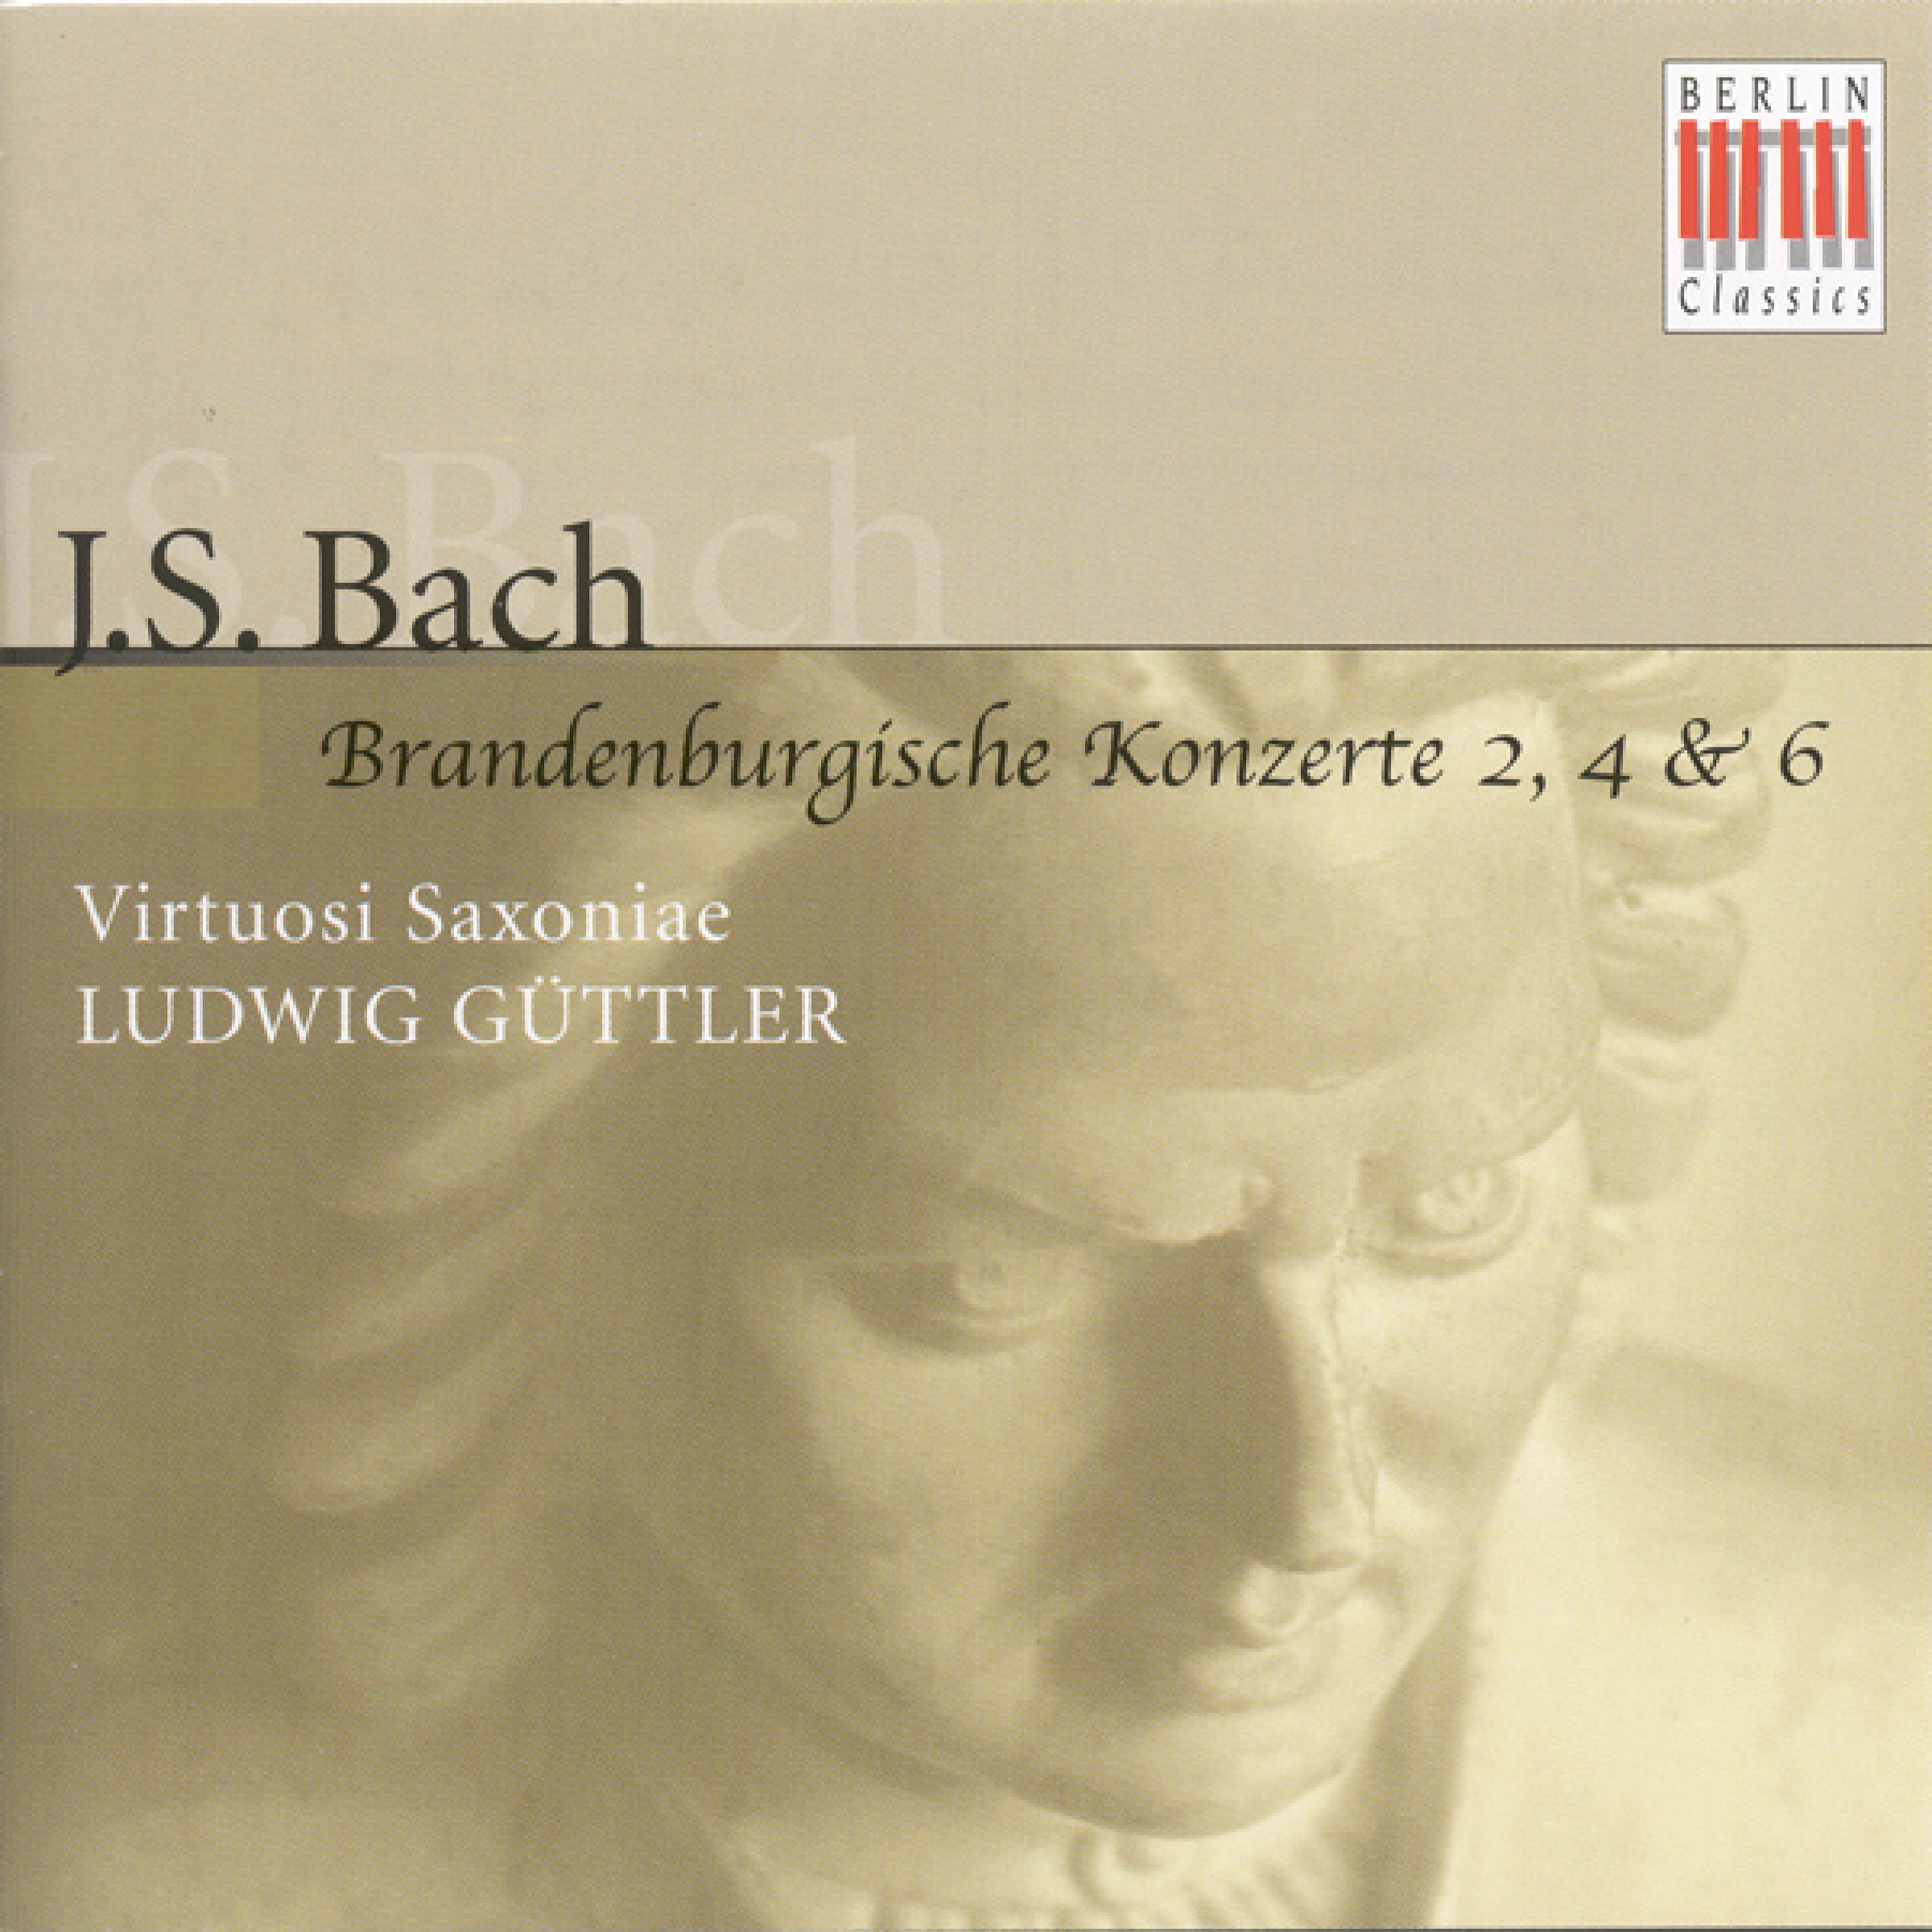 Brandenburg Concerto No. 6 in BFlat Major, BWV 1051: I.